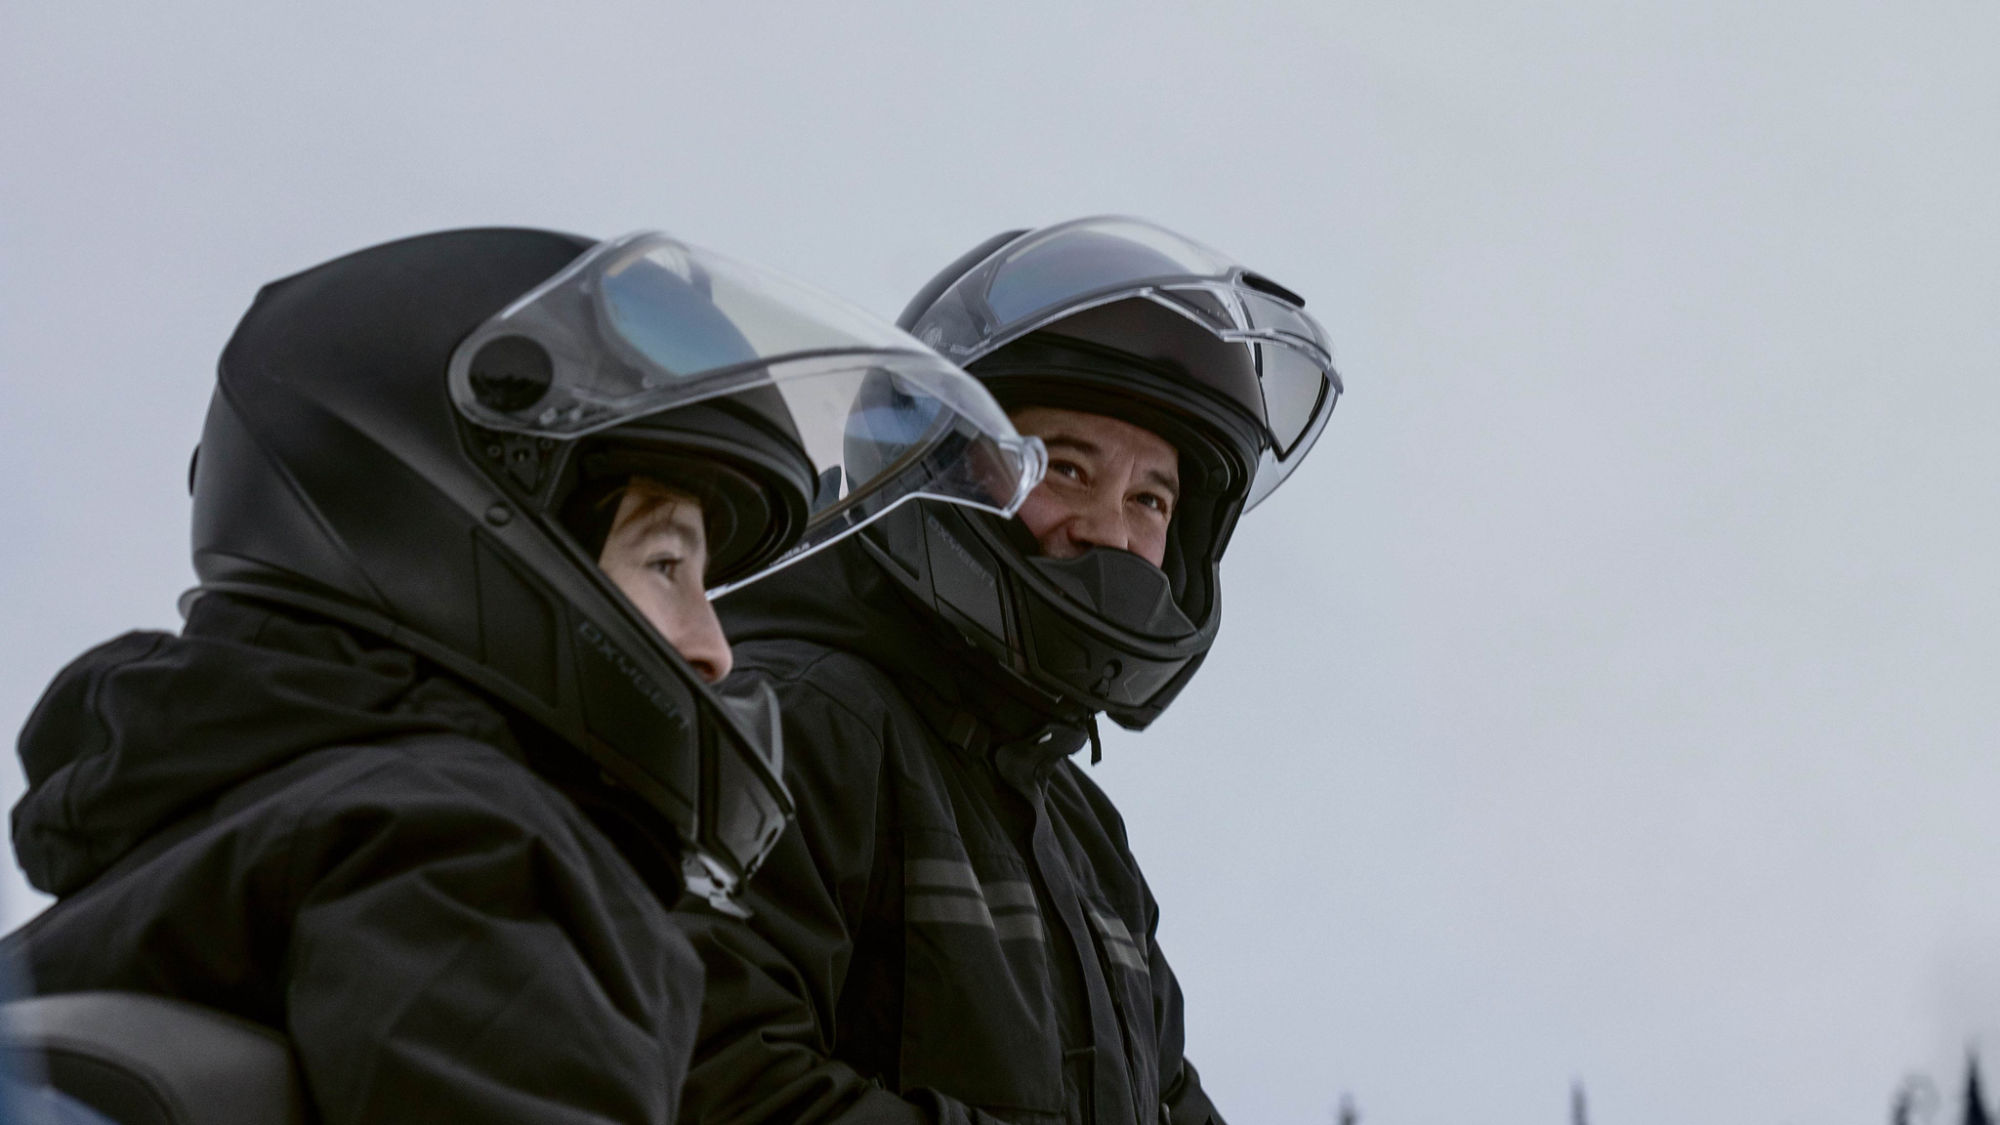 Snowmobile riders wearing Oyxgen safety helmets